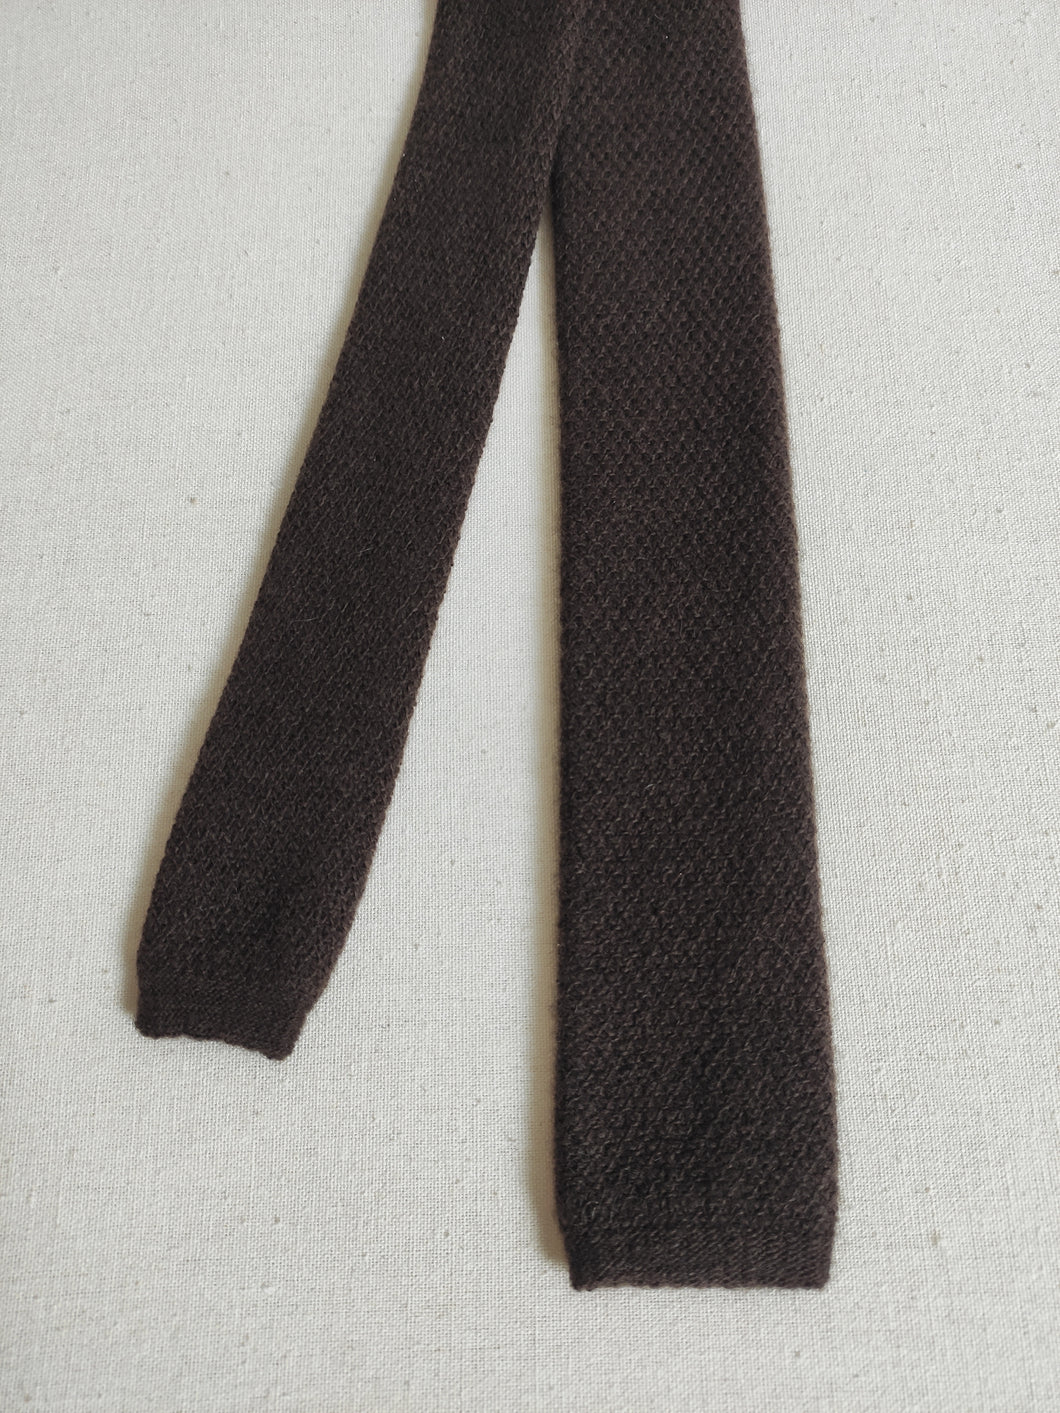 Rosa & Teixeira cravate marron à bout carré en laine et cachemire